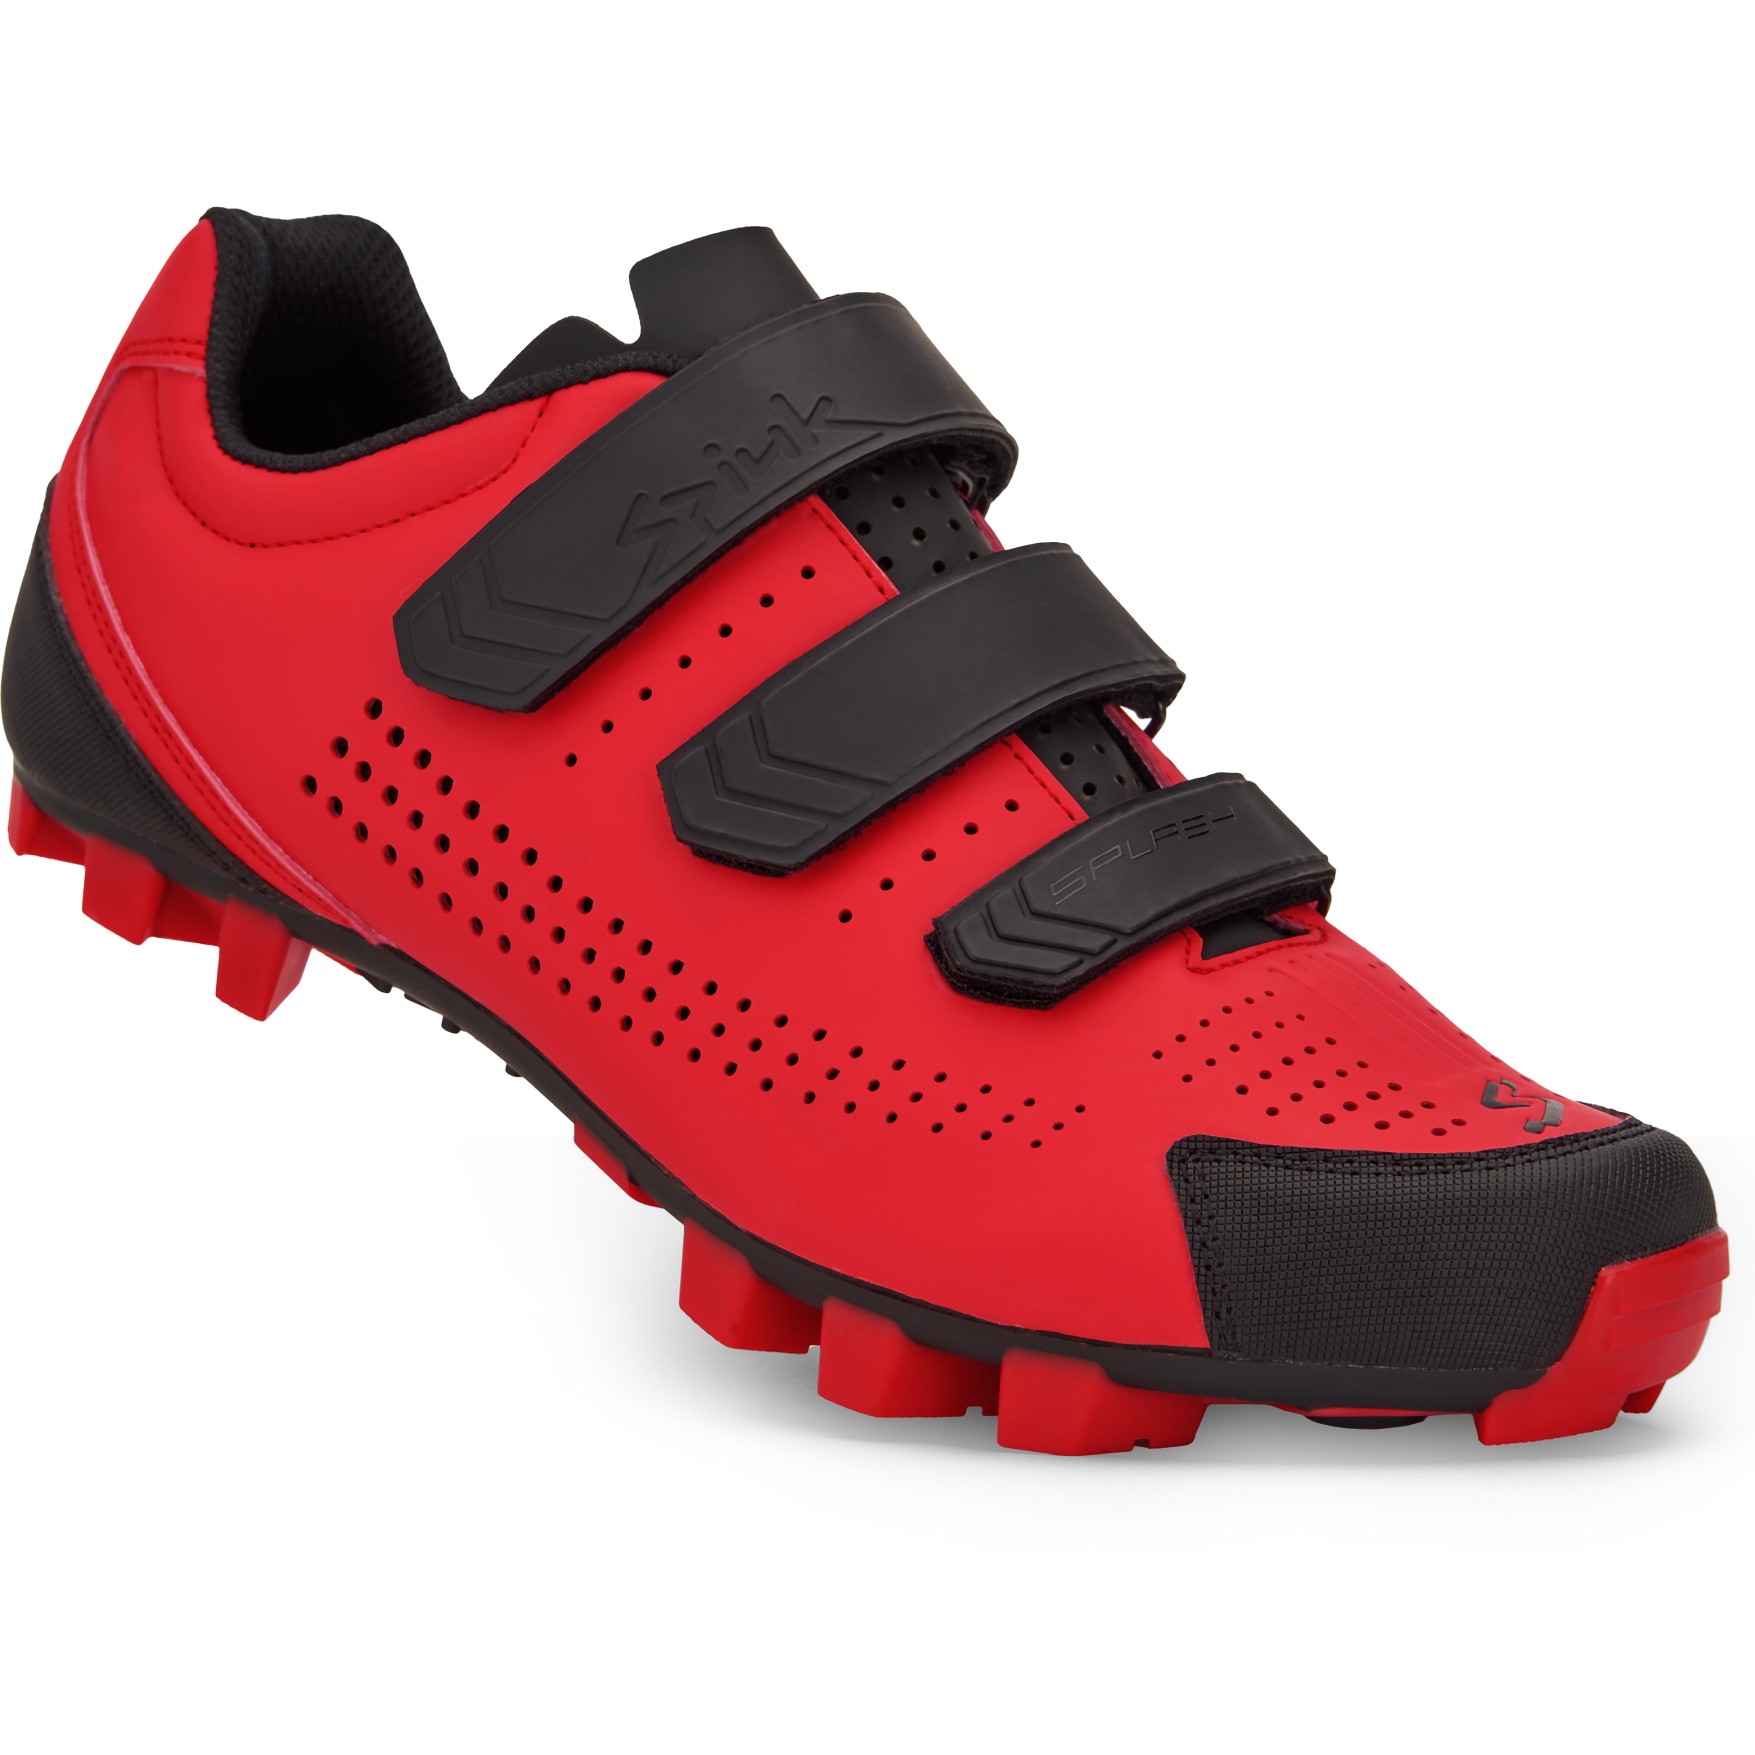 Produktbild von Spiuk Splash MTB Schuh - rot